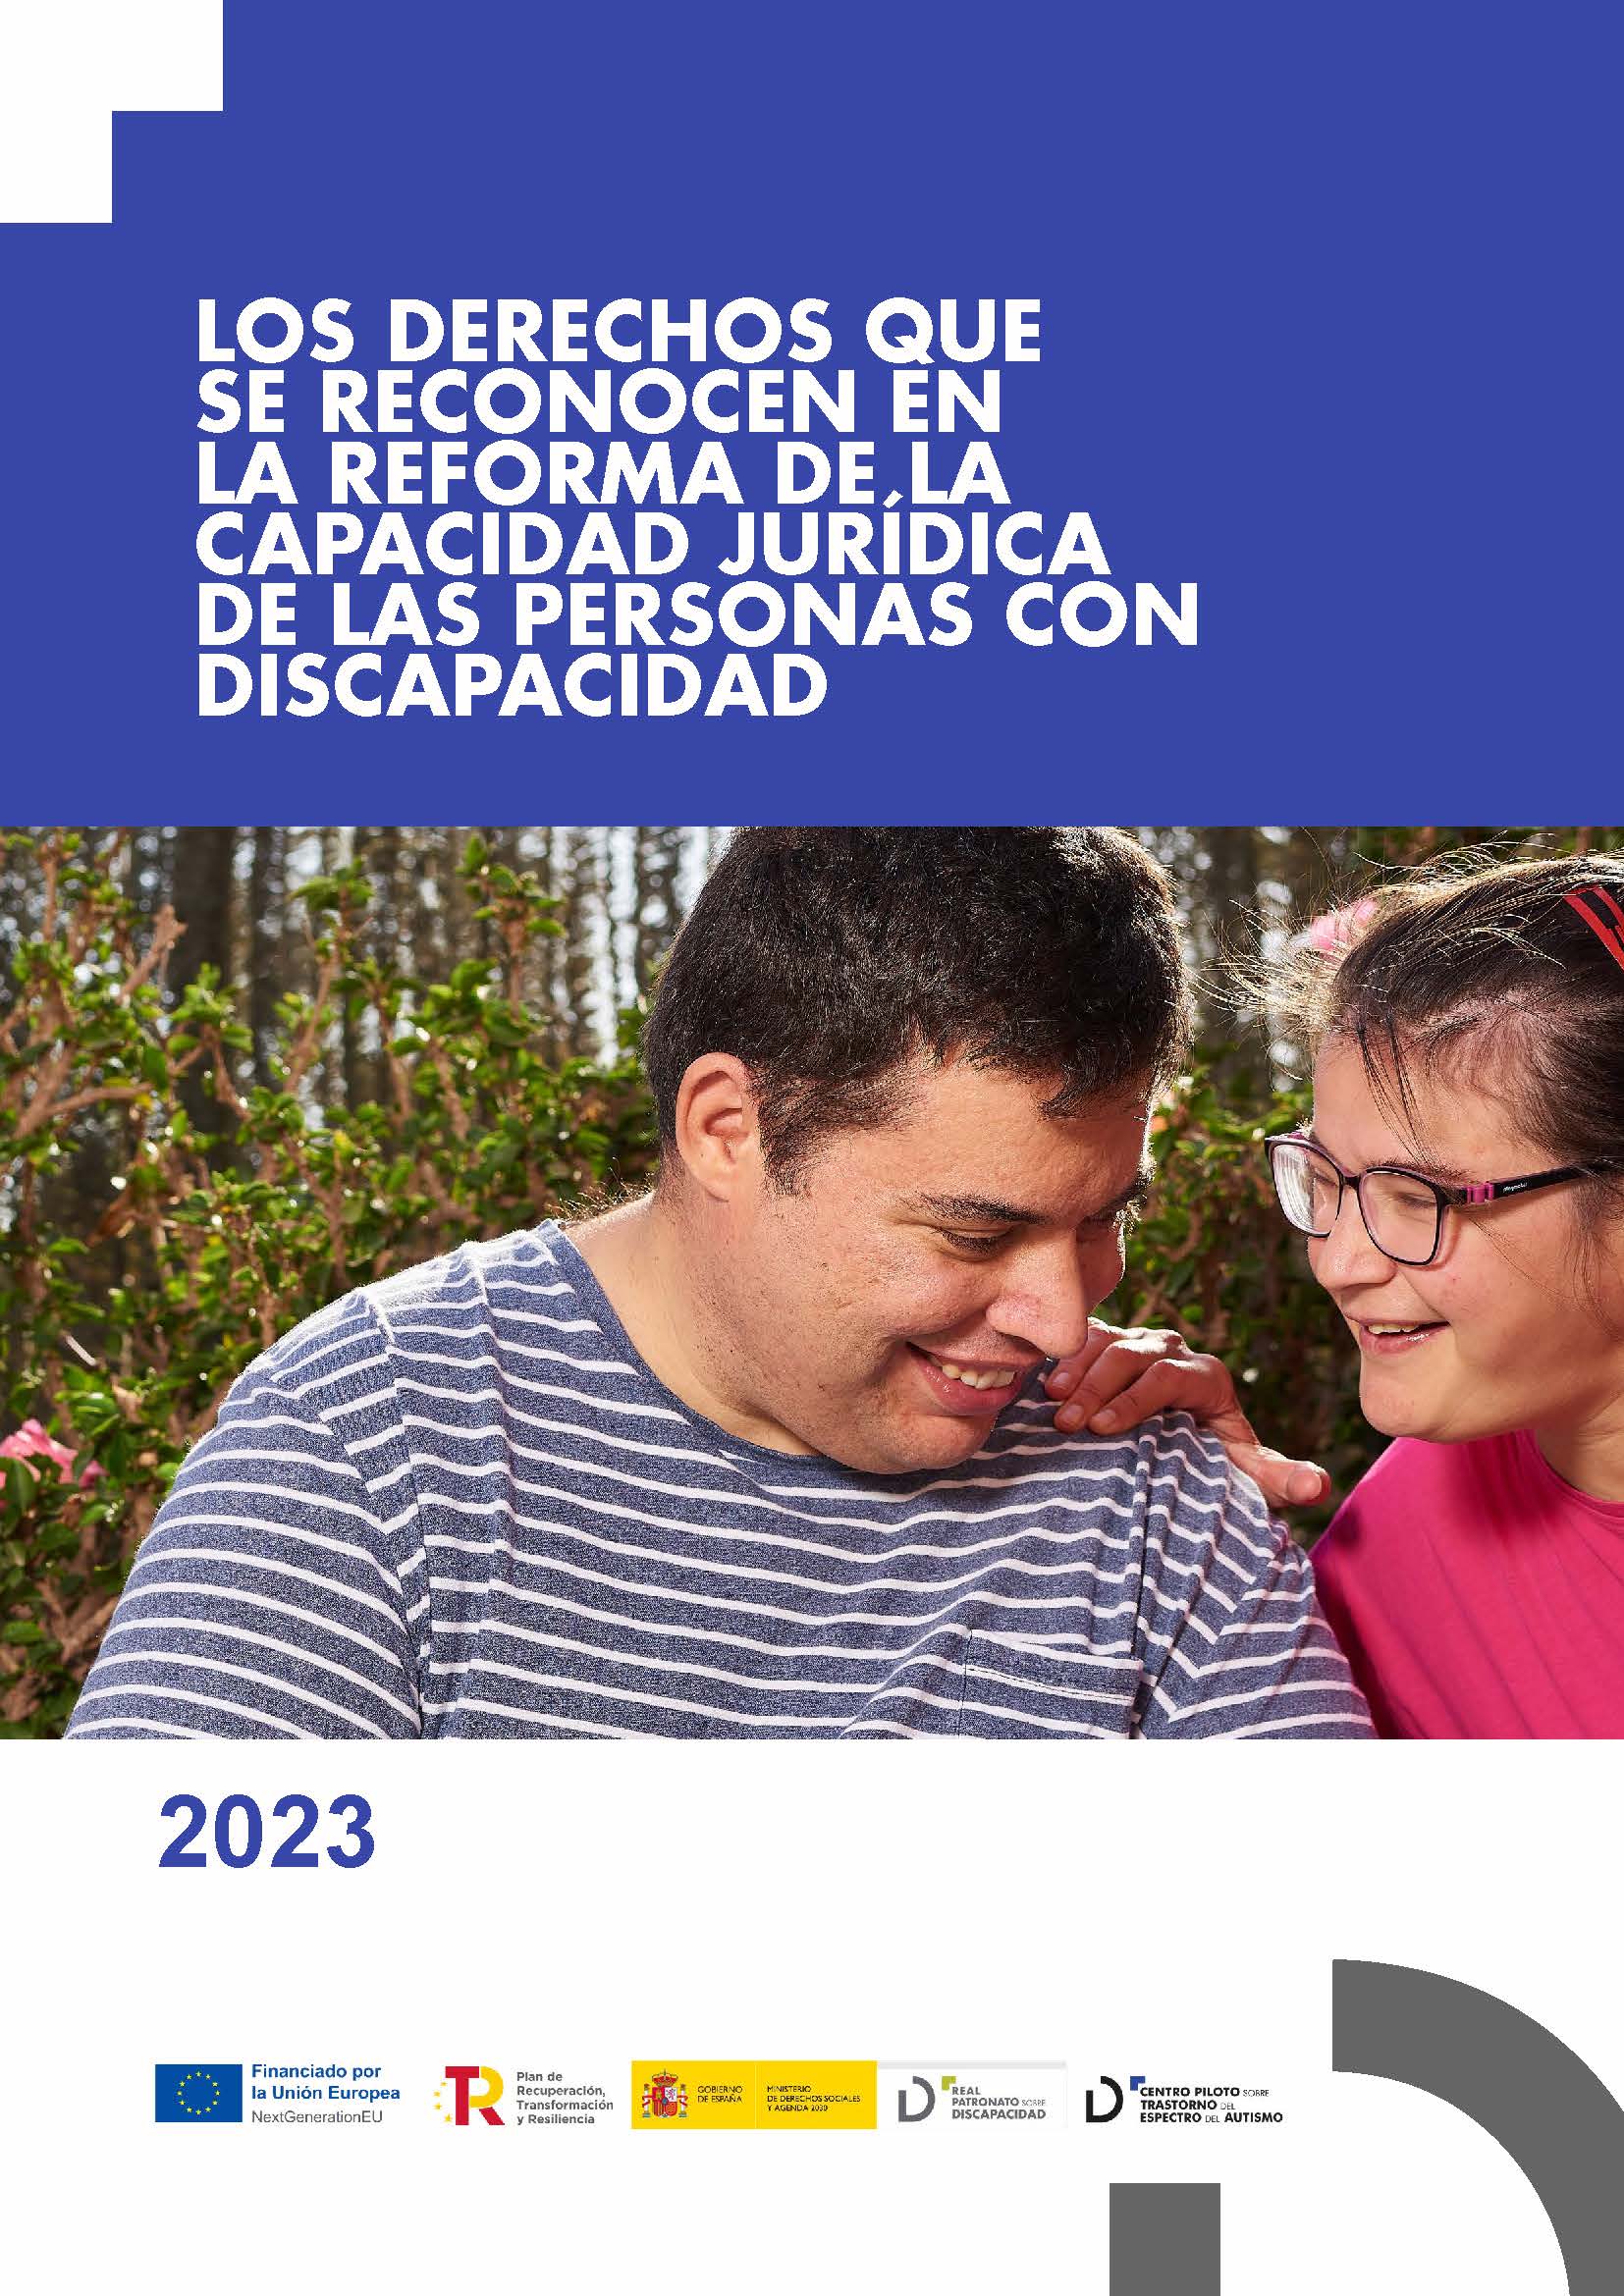 Imagen noticia Portada de Los derechos que se reconocen en la reforma de la capacidad jurídica de las personas con discapacidad